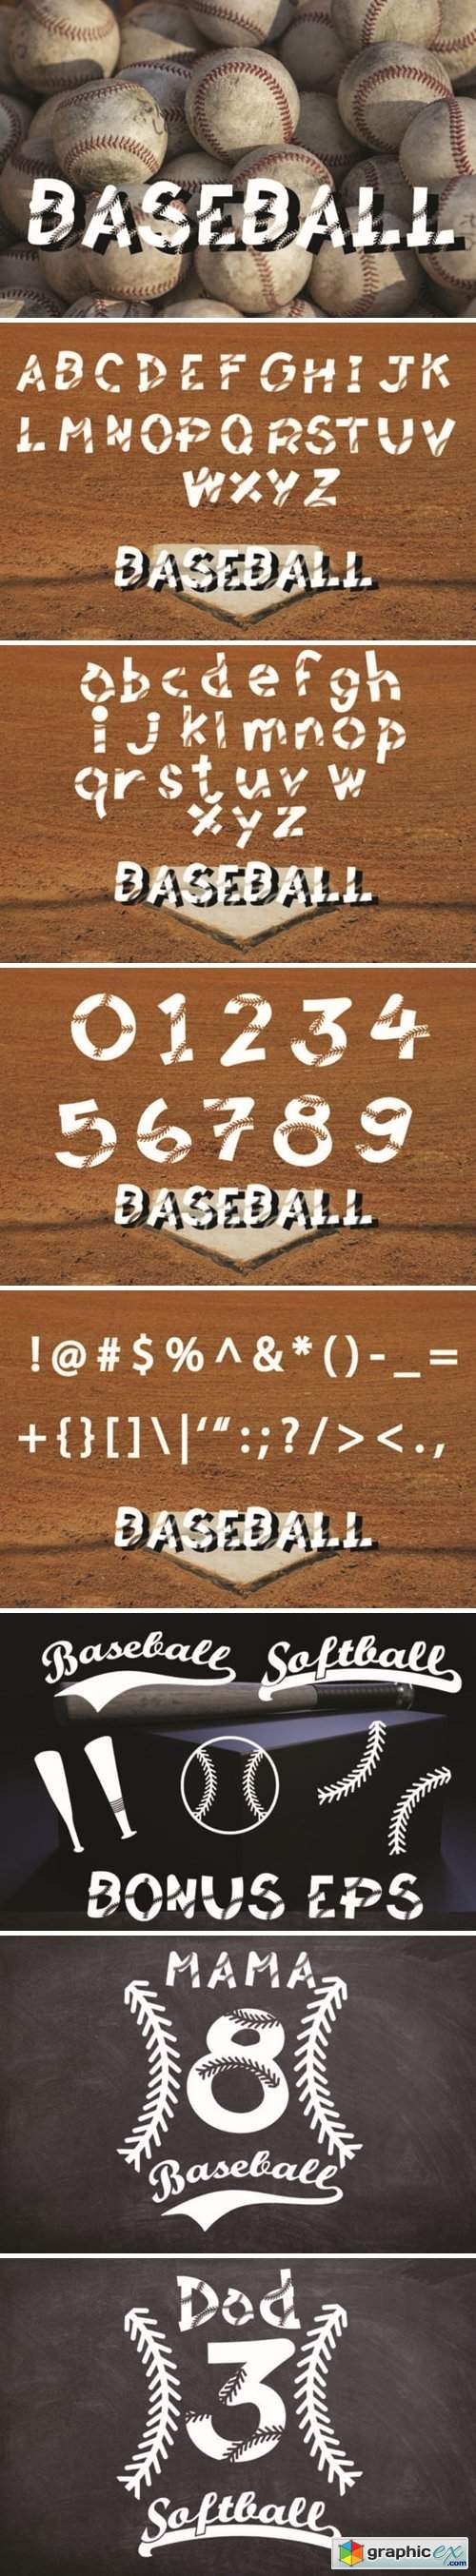  Baseball Softball Lace Font 